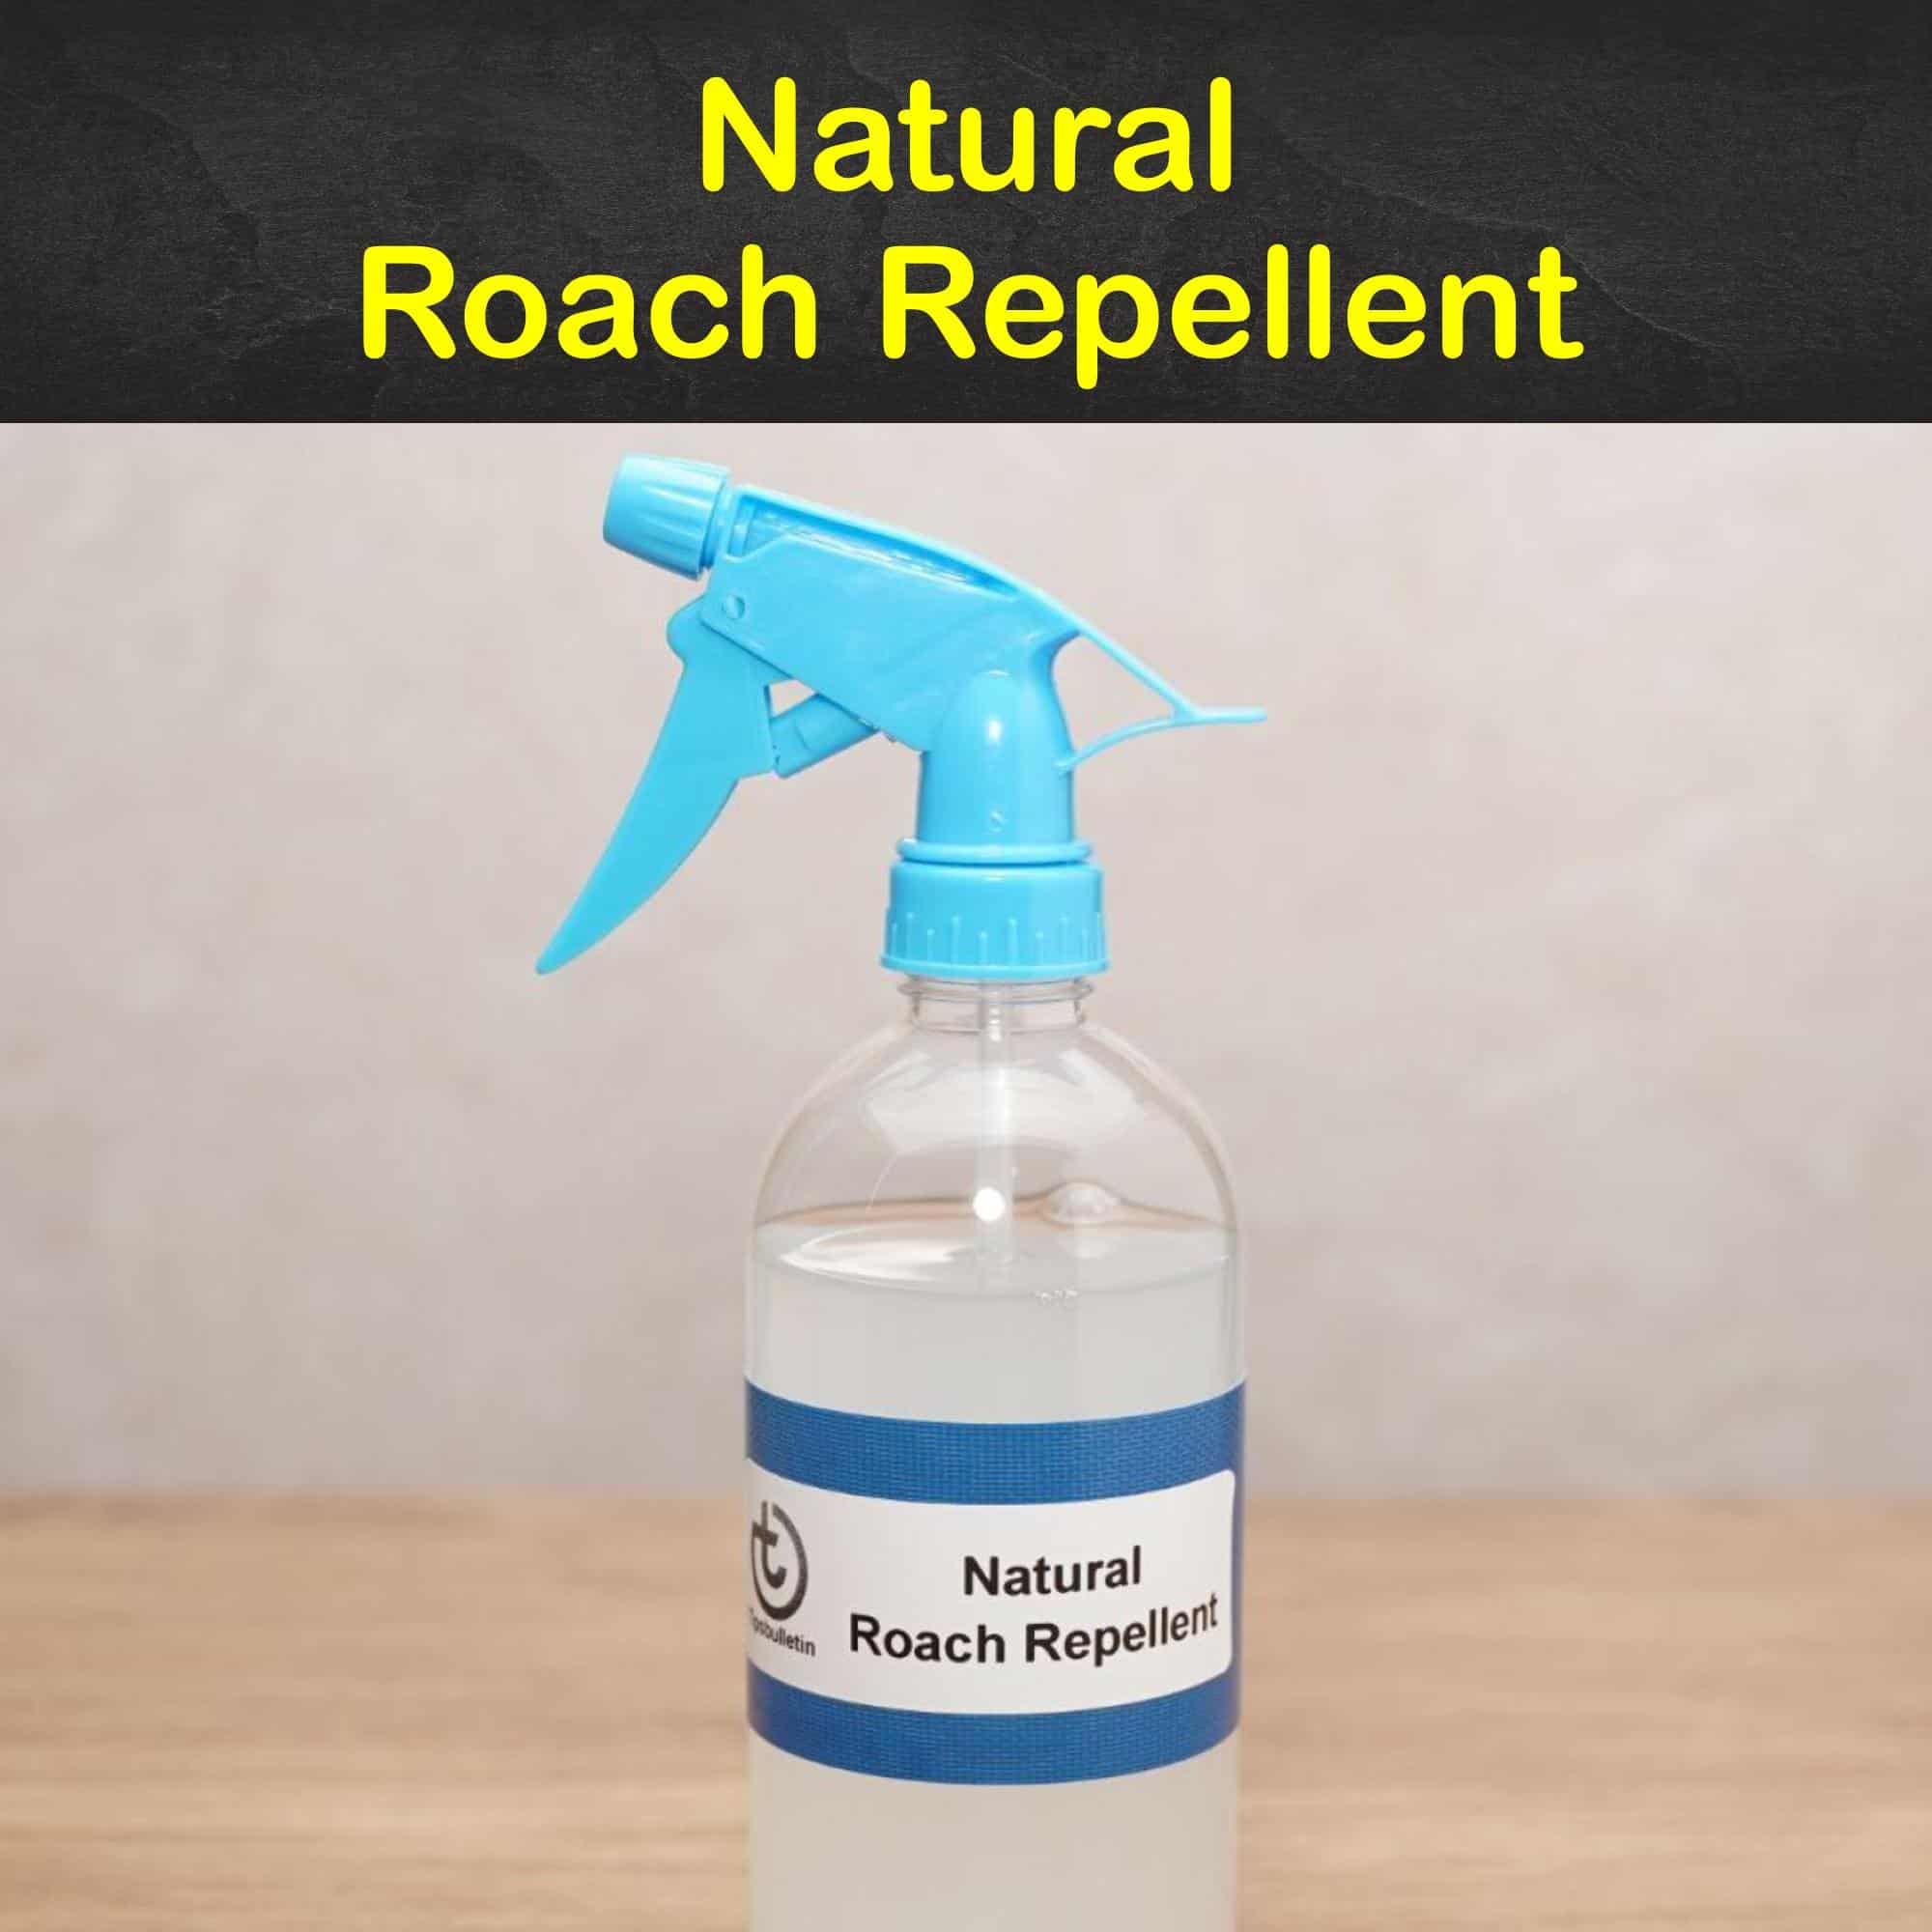 Natural Roach Repellent